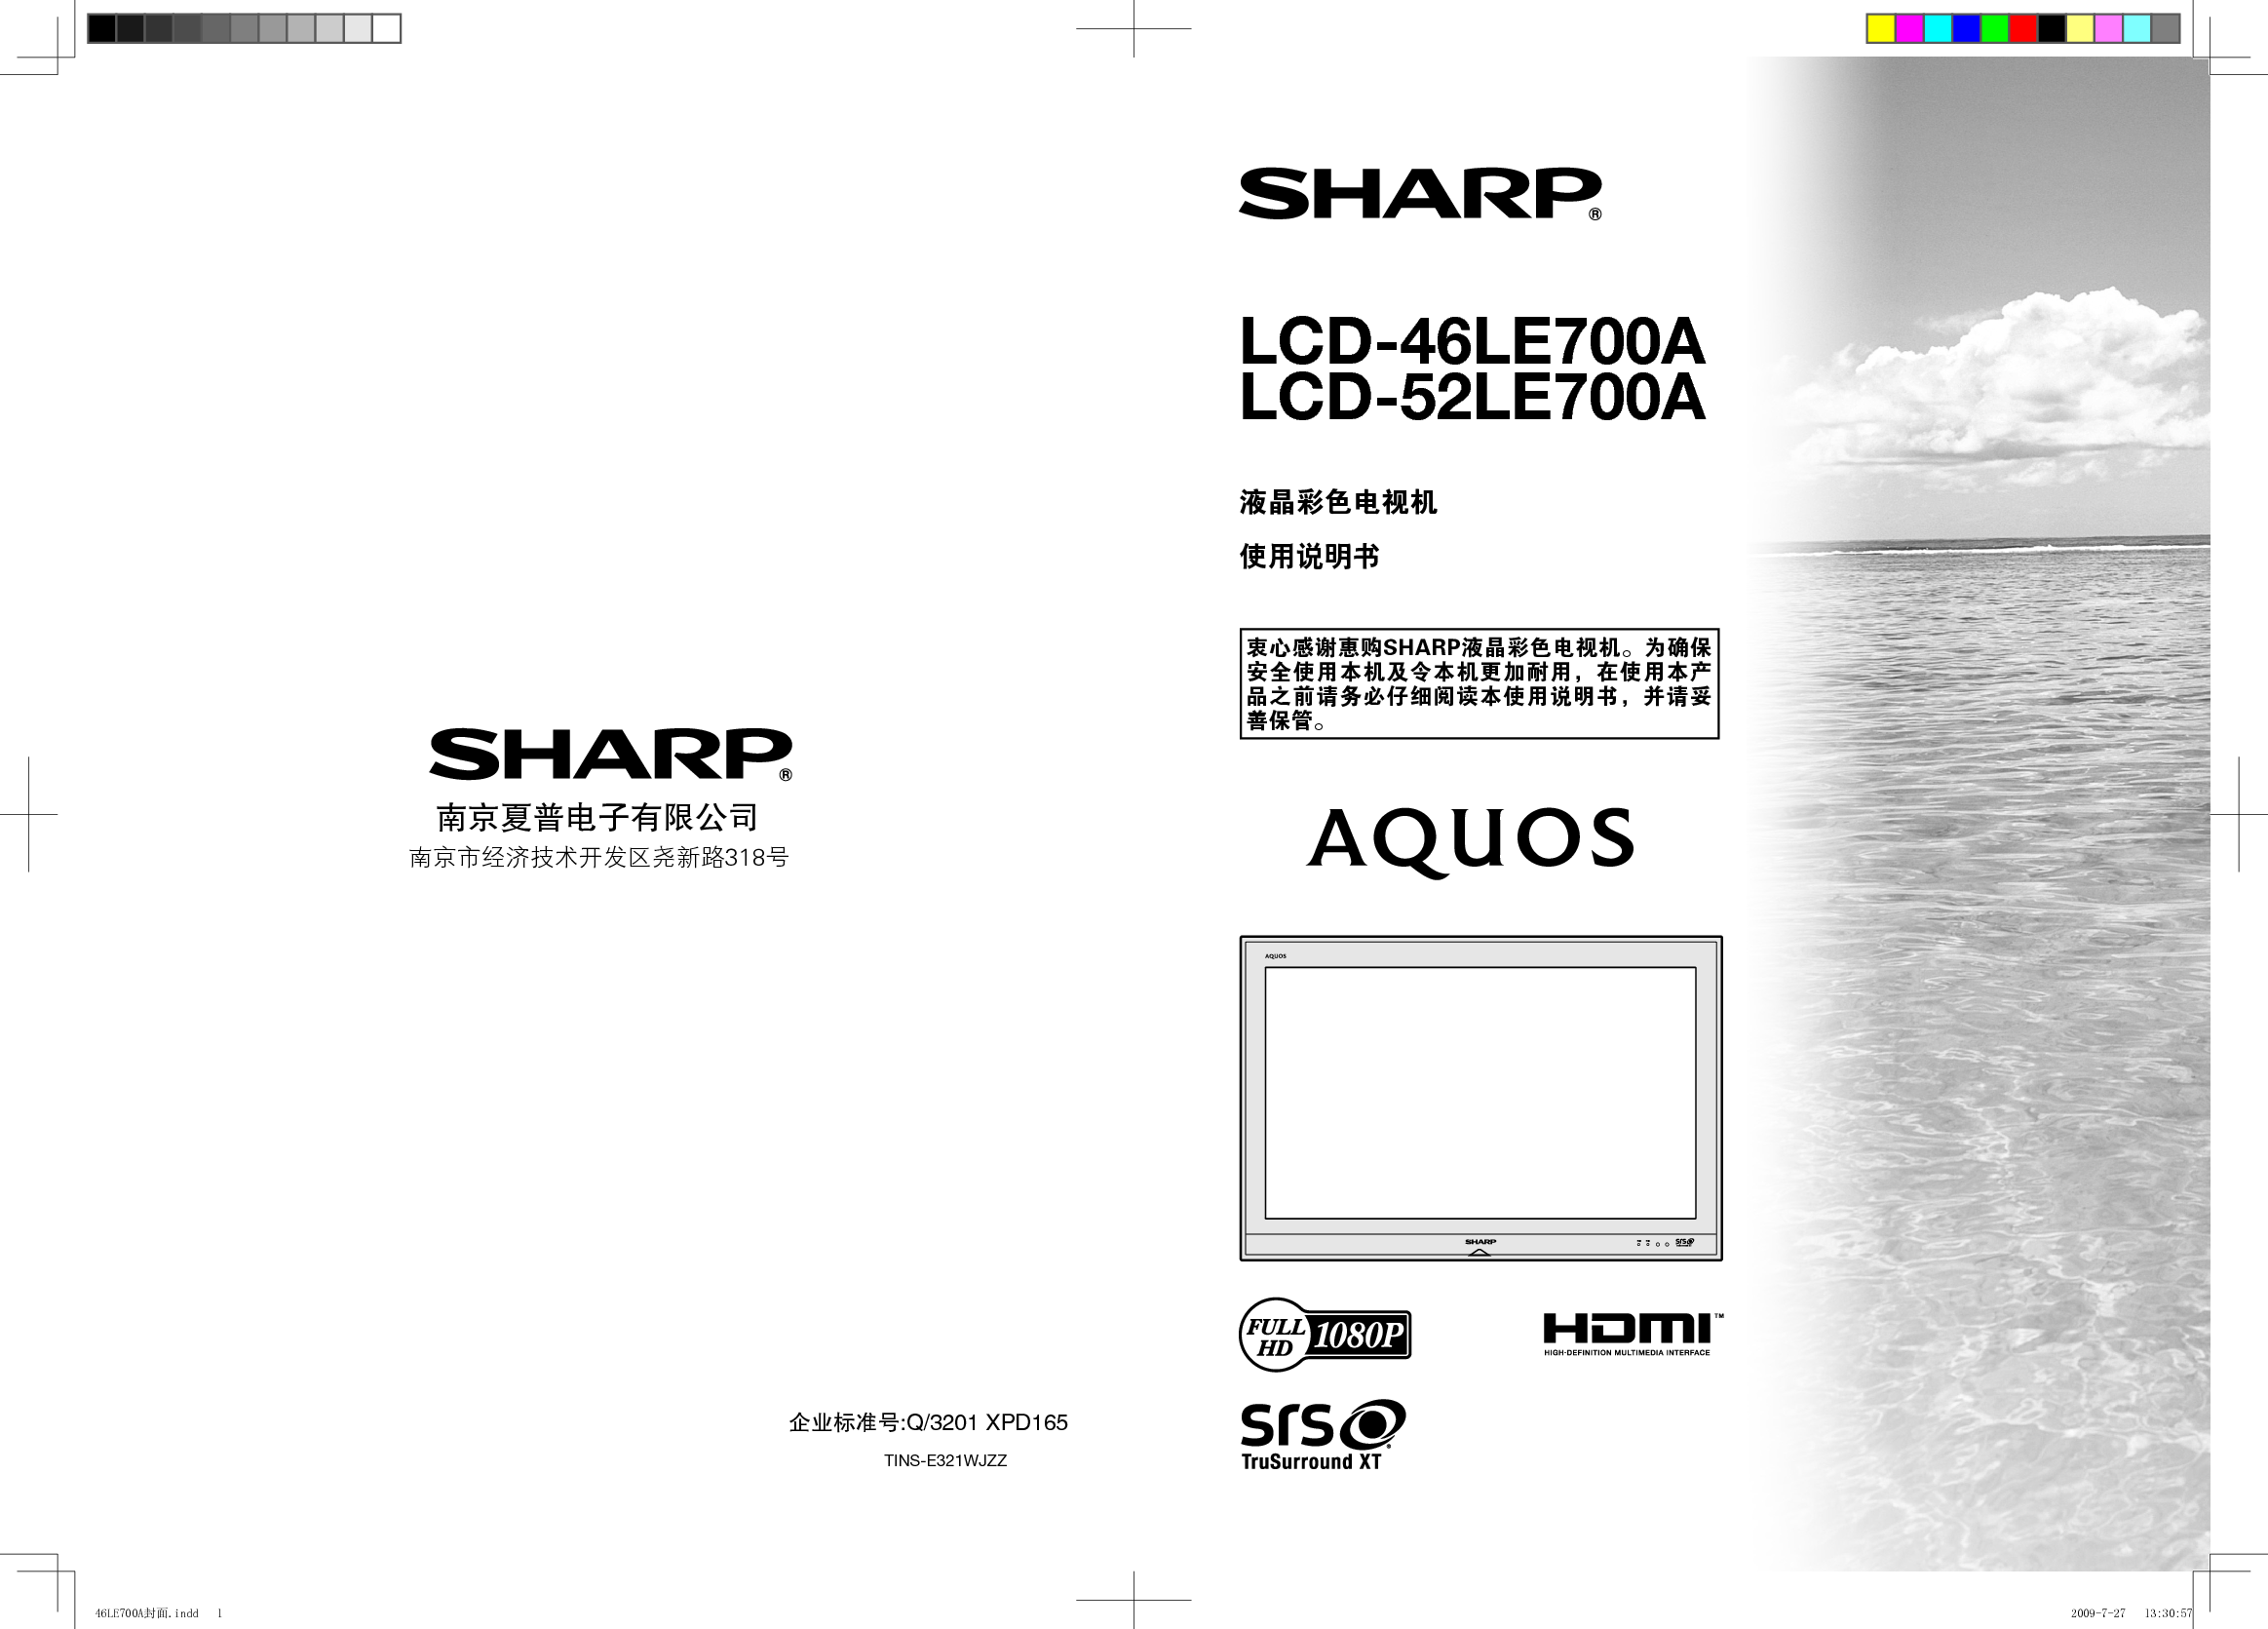 夏普 Sharp LCD-46LE700A 说明书 封面